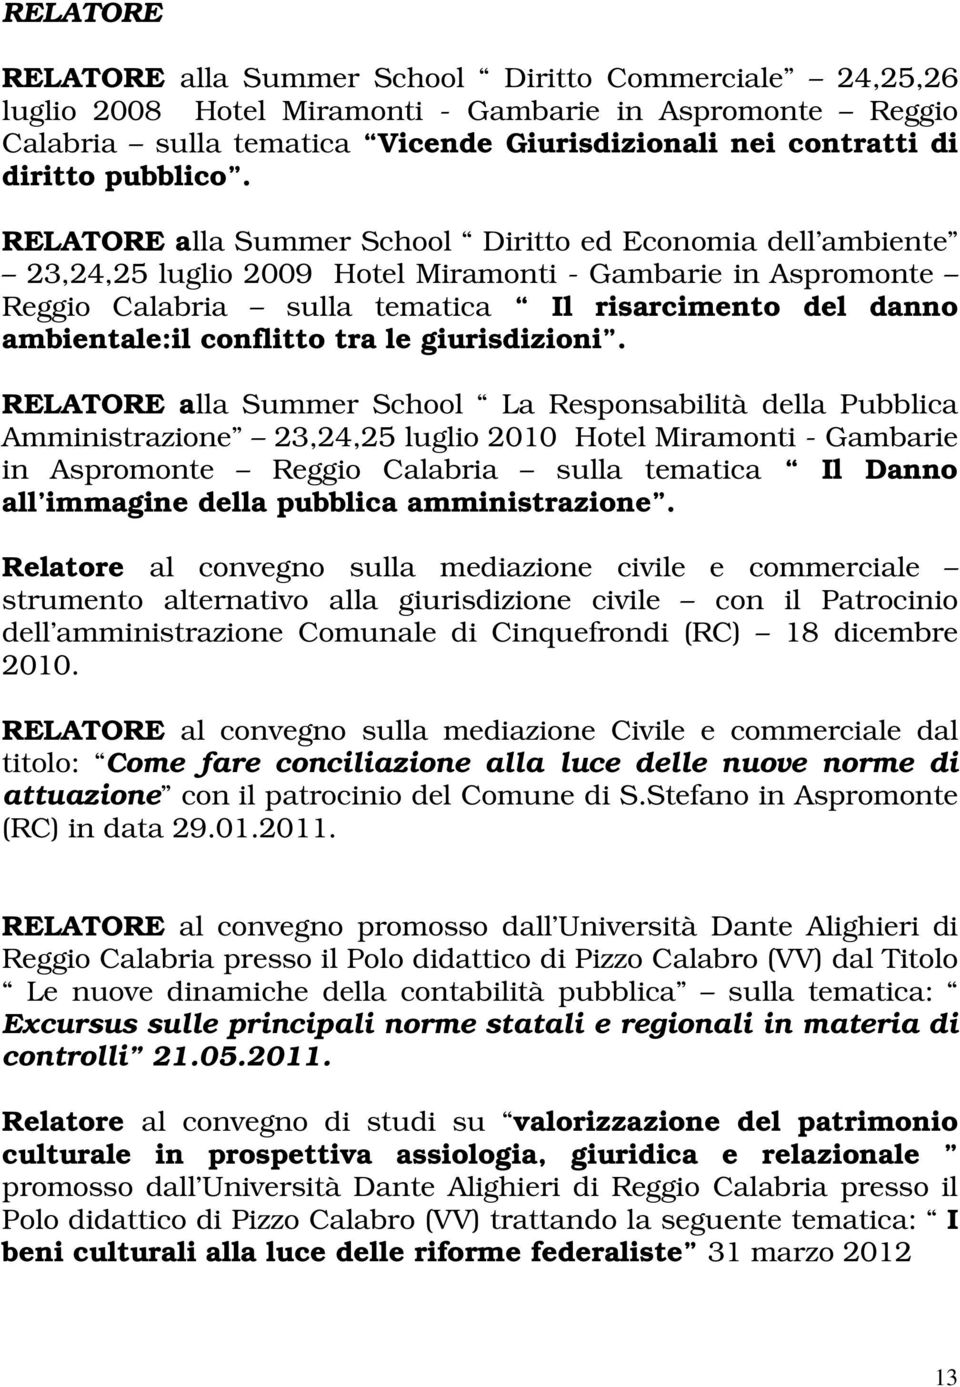 RELATORE alla Summer School Diritto ed Economia dell ambiente 23,24,25 luglio 2009 Hotel Miramonti - Gambarie in Aspromonte Reggio Calabria sulla tematica Il risarcimento del danno ambientale:il